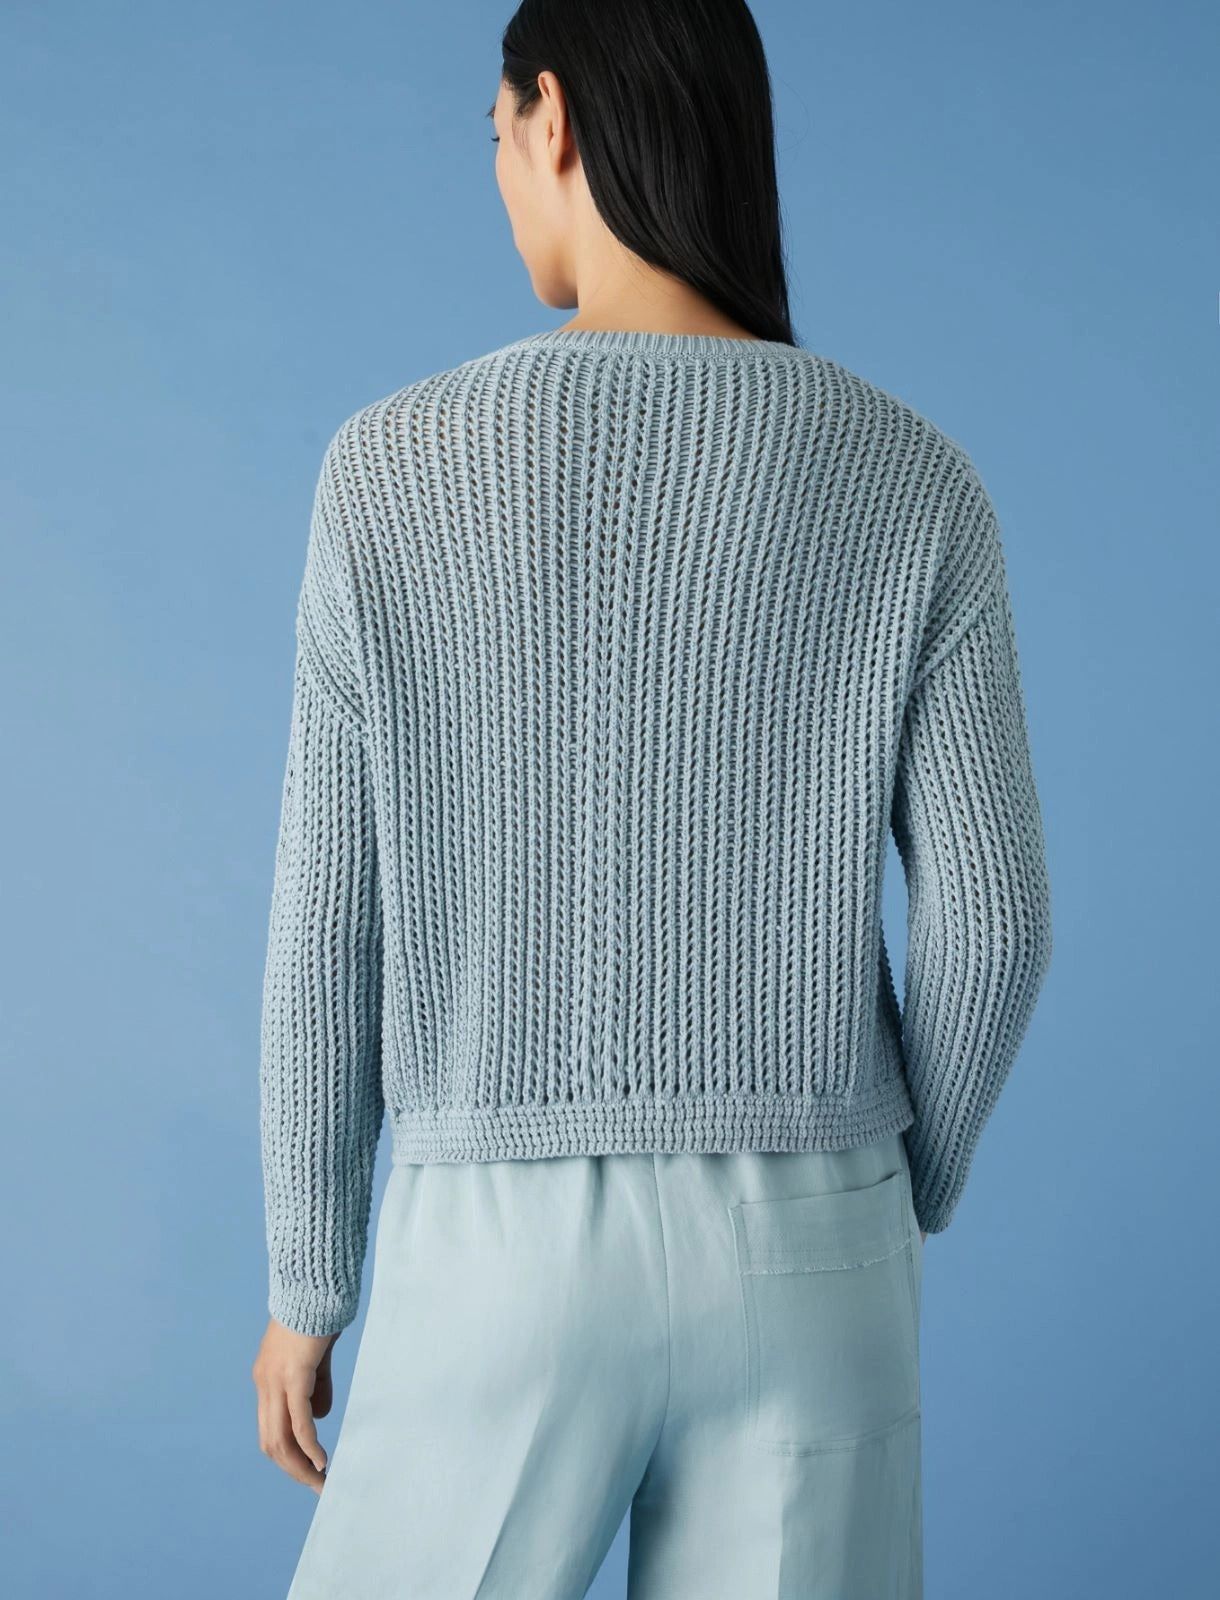 sky blue boxy sweater